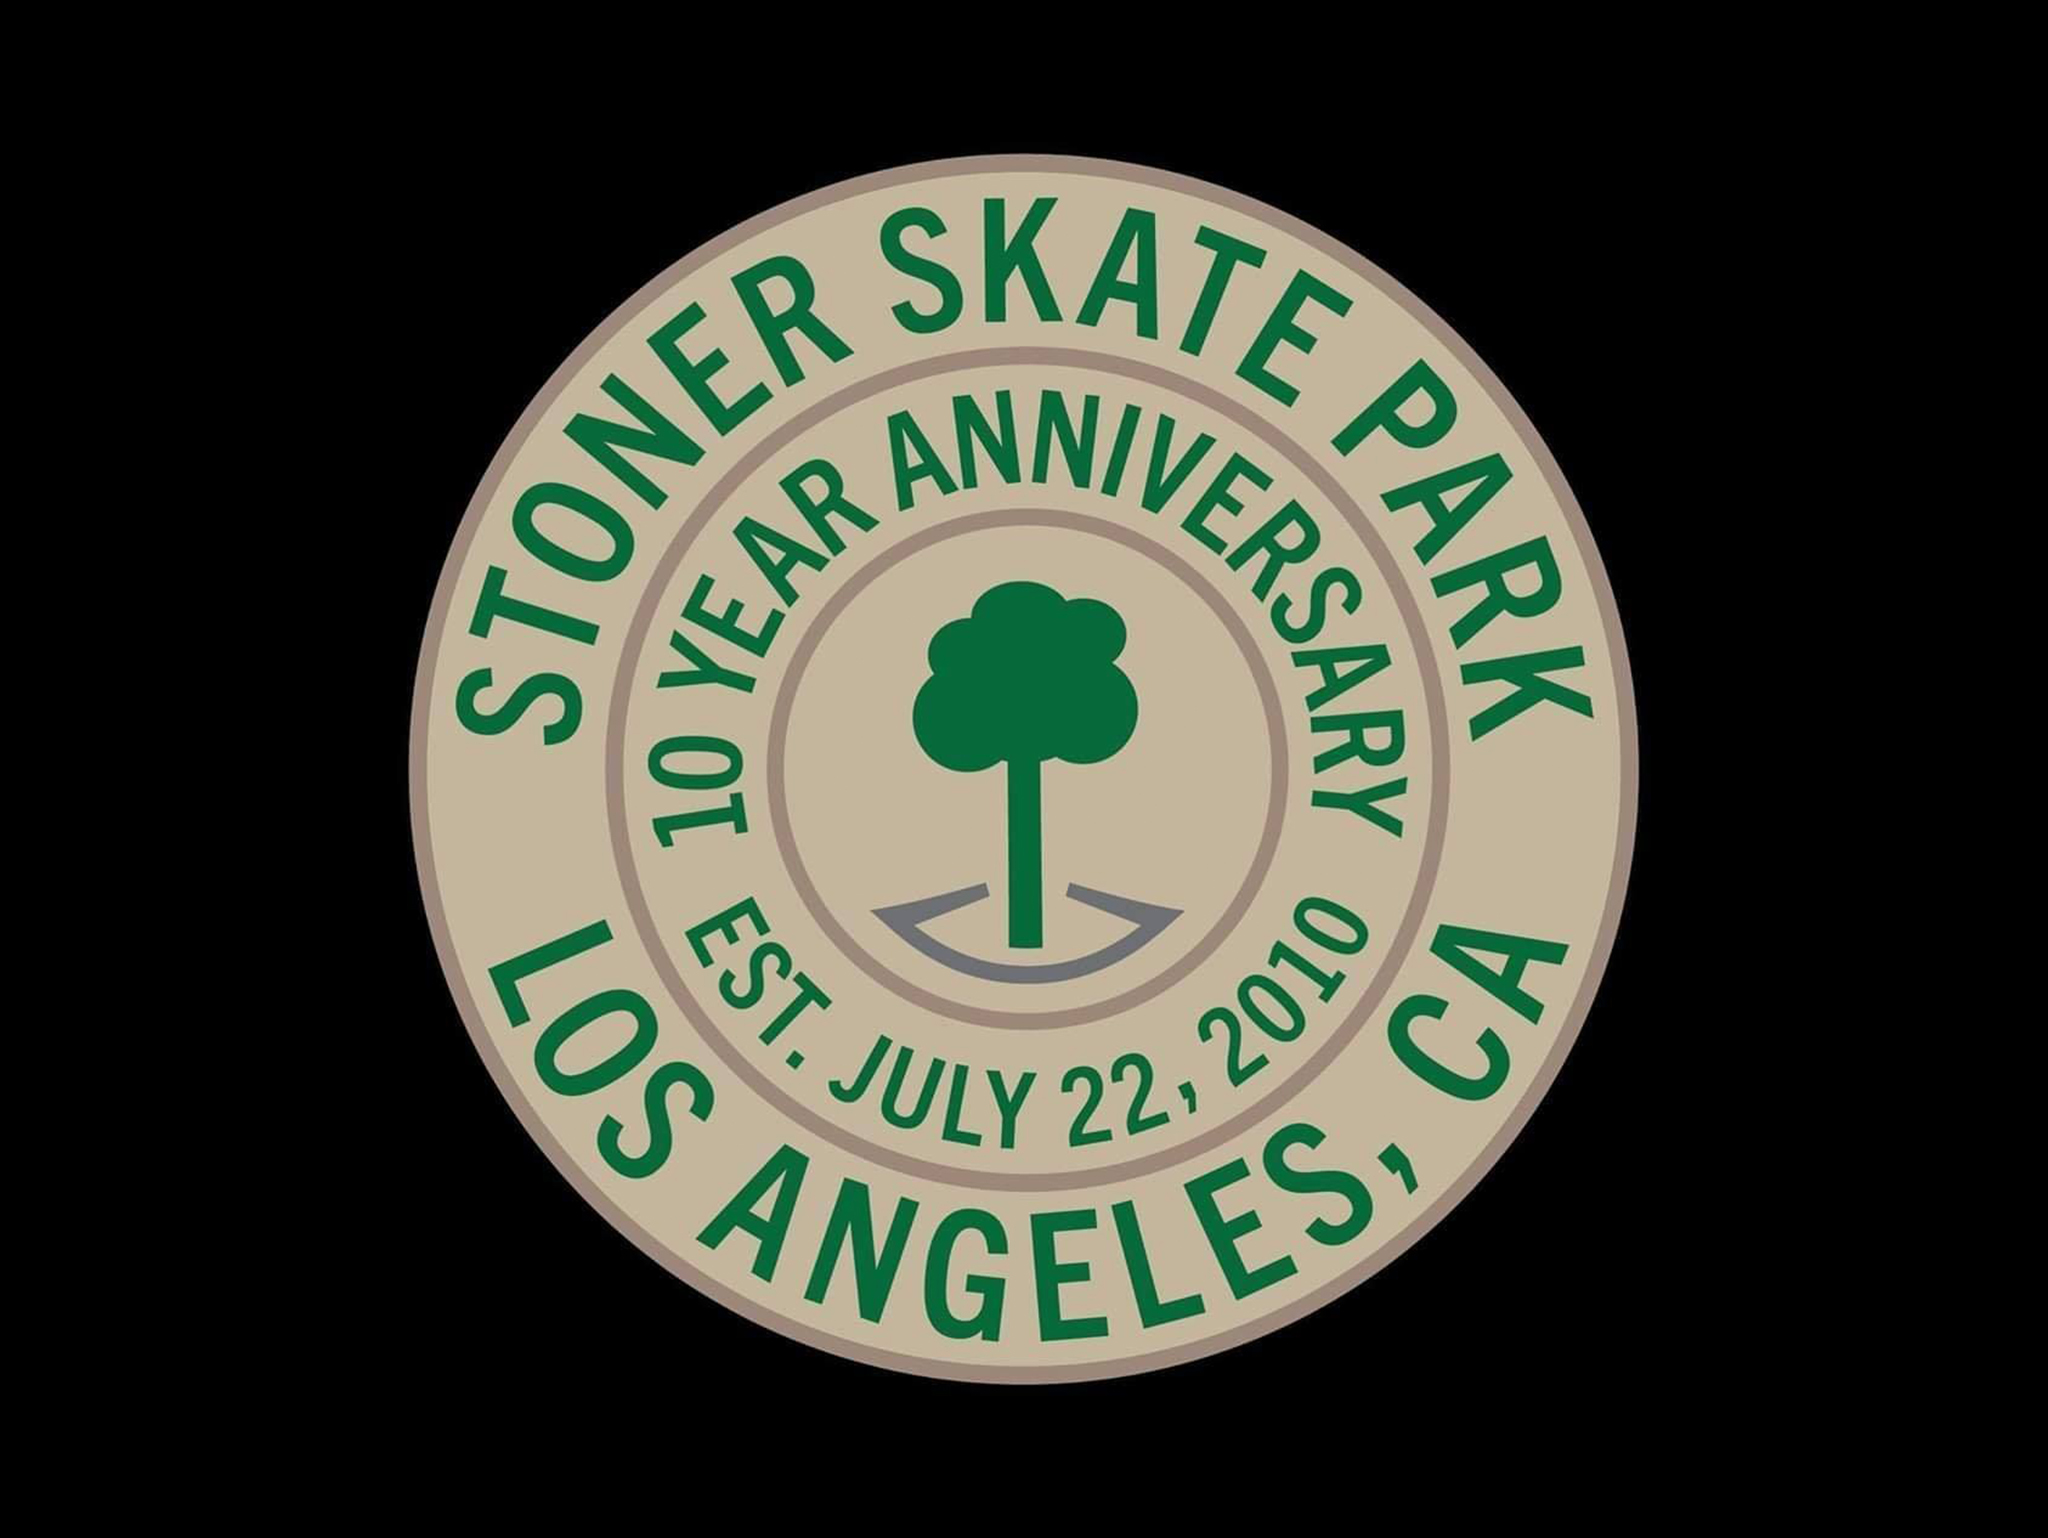 2020 | Stoner Skate Park